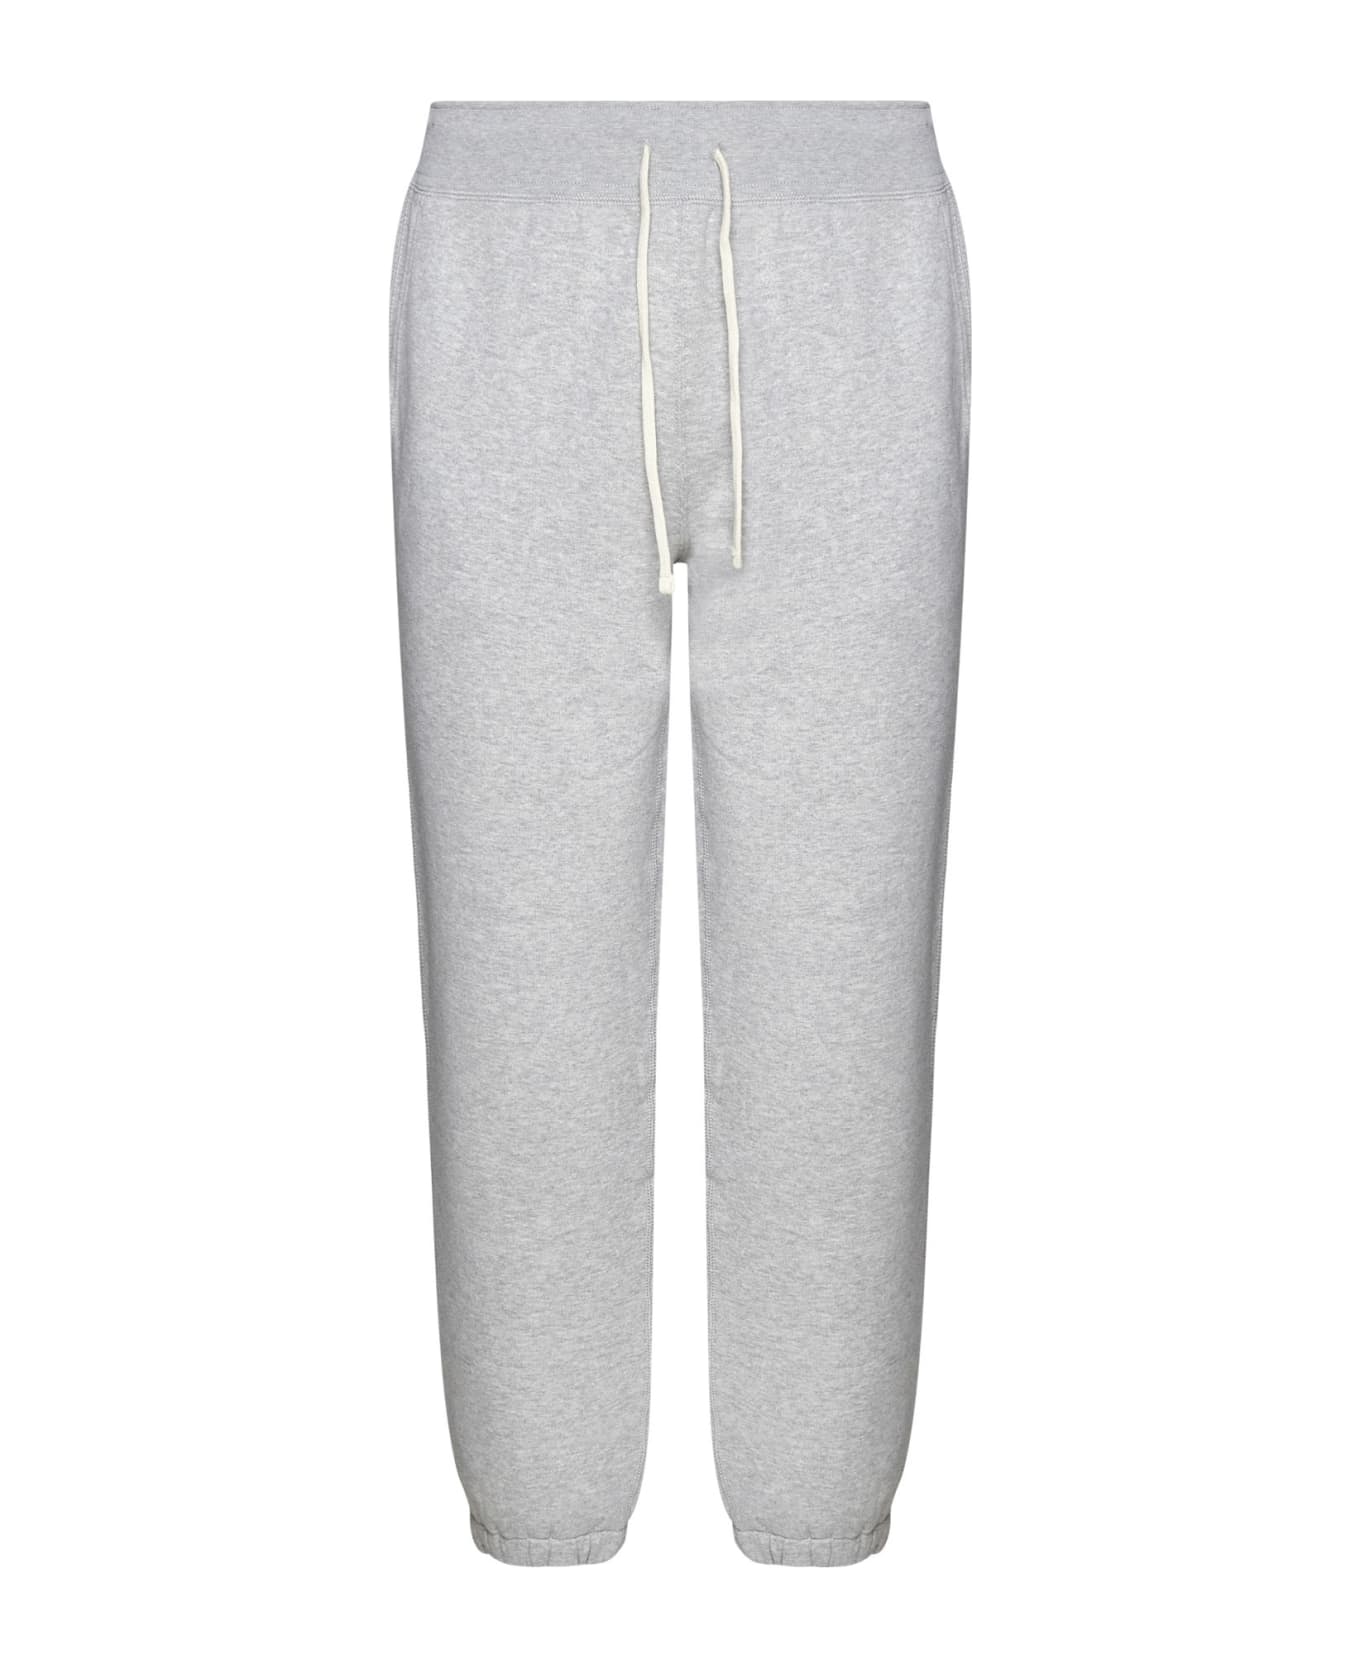 Polo Ralph Lauren Grey Cotton Blend Sporty Pants - Grey